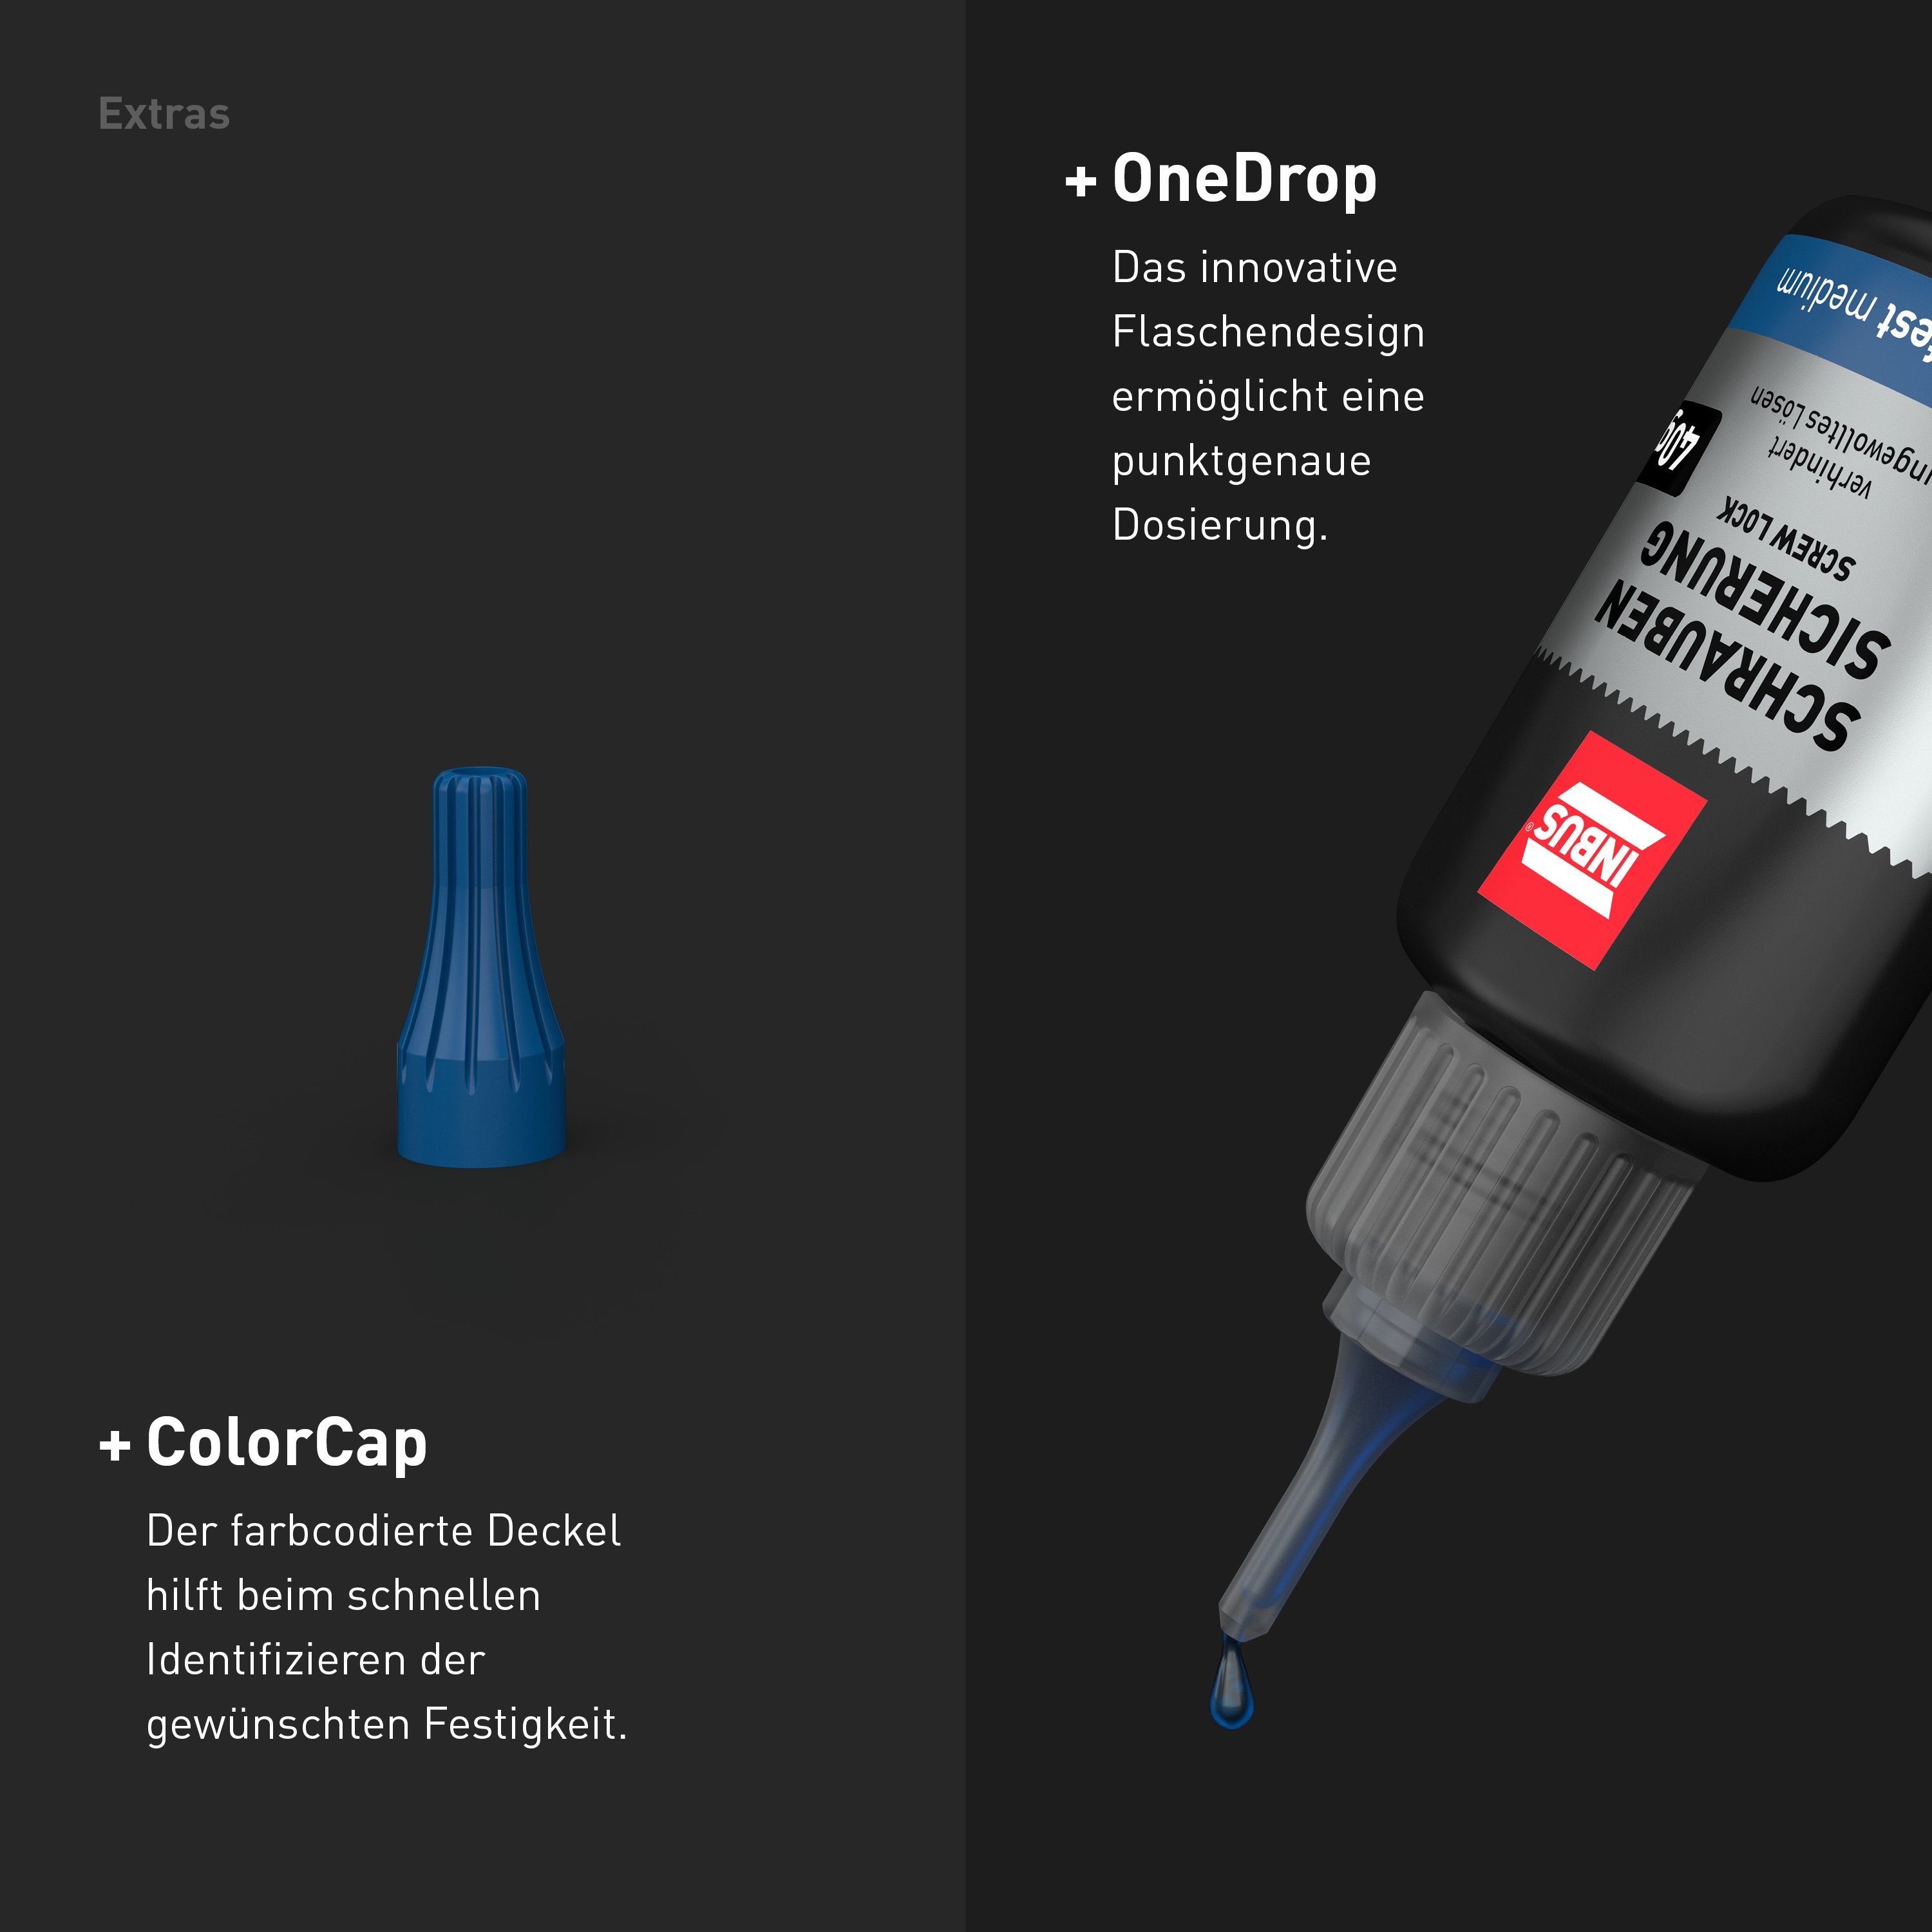 Schraubenkleber OneDrop INBUS ColorCap + mittelfest, 40g, Schraubensicherung Gewindekleber, Klebstoff